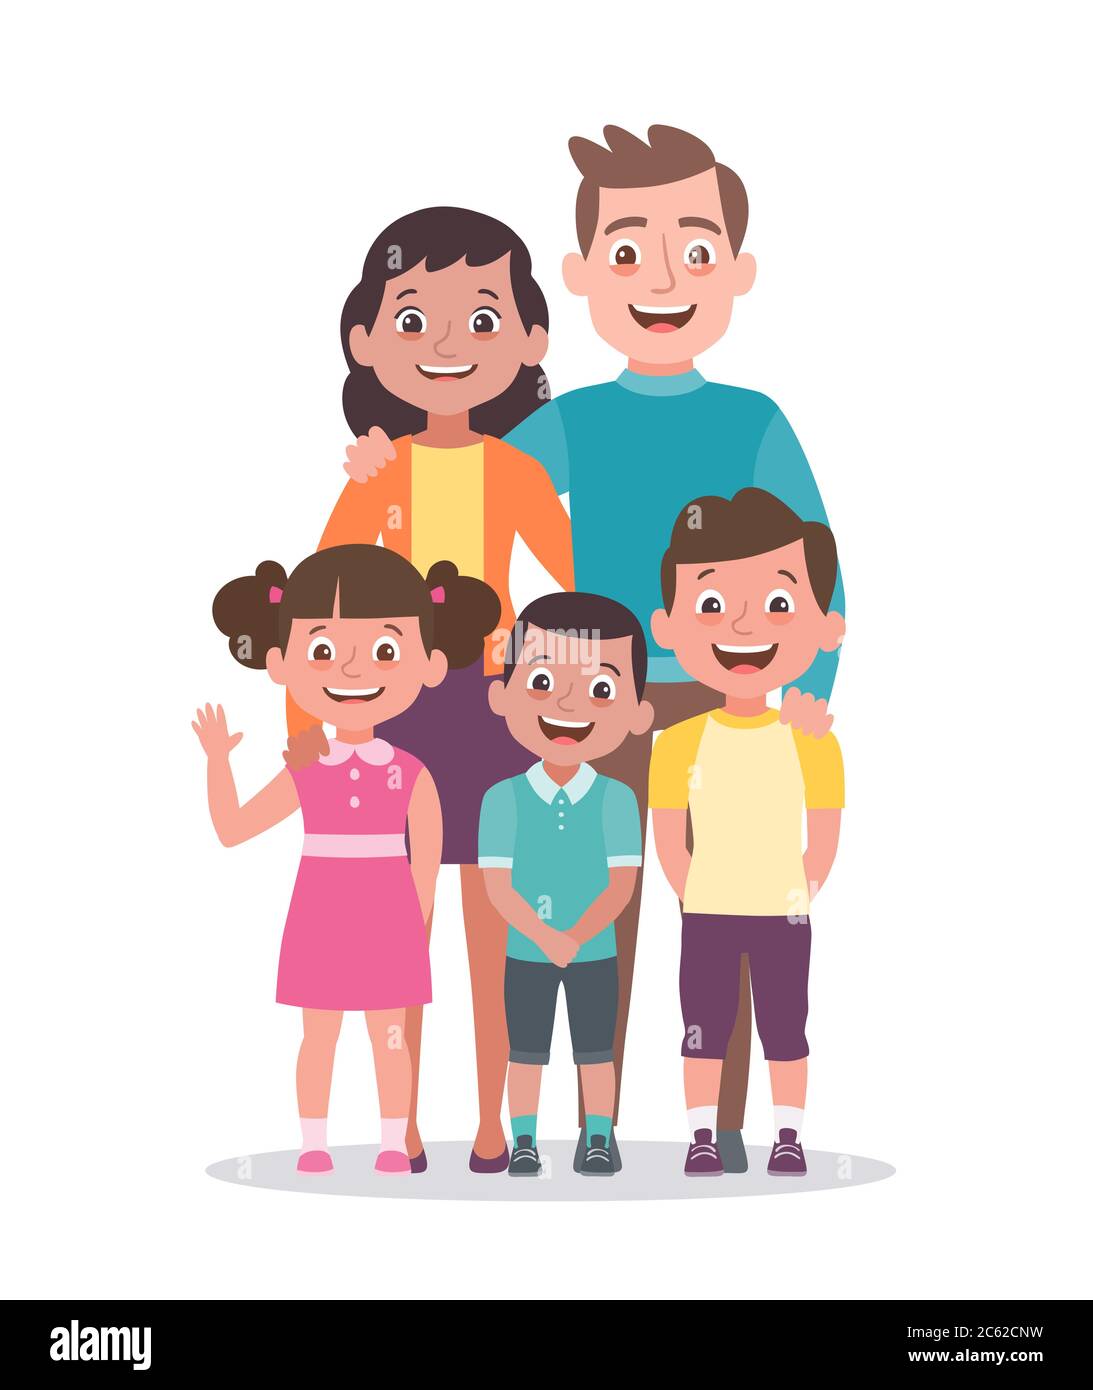 Familienportrait. Vater, Mutter, Tochter und Söhne. Porträt der Familie, die zusammen stehen. Vektorgrafik im Cartoon-Stil iso Stock Vektor